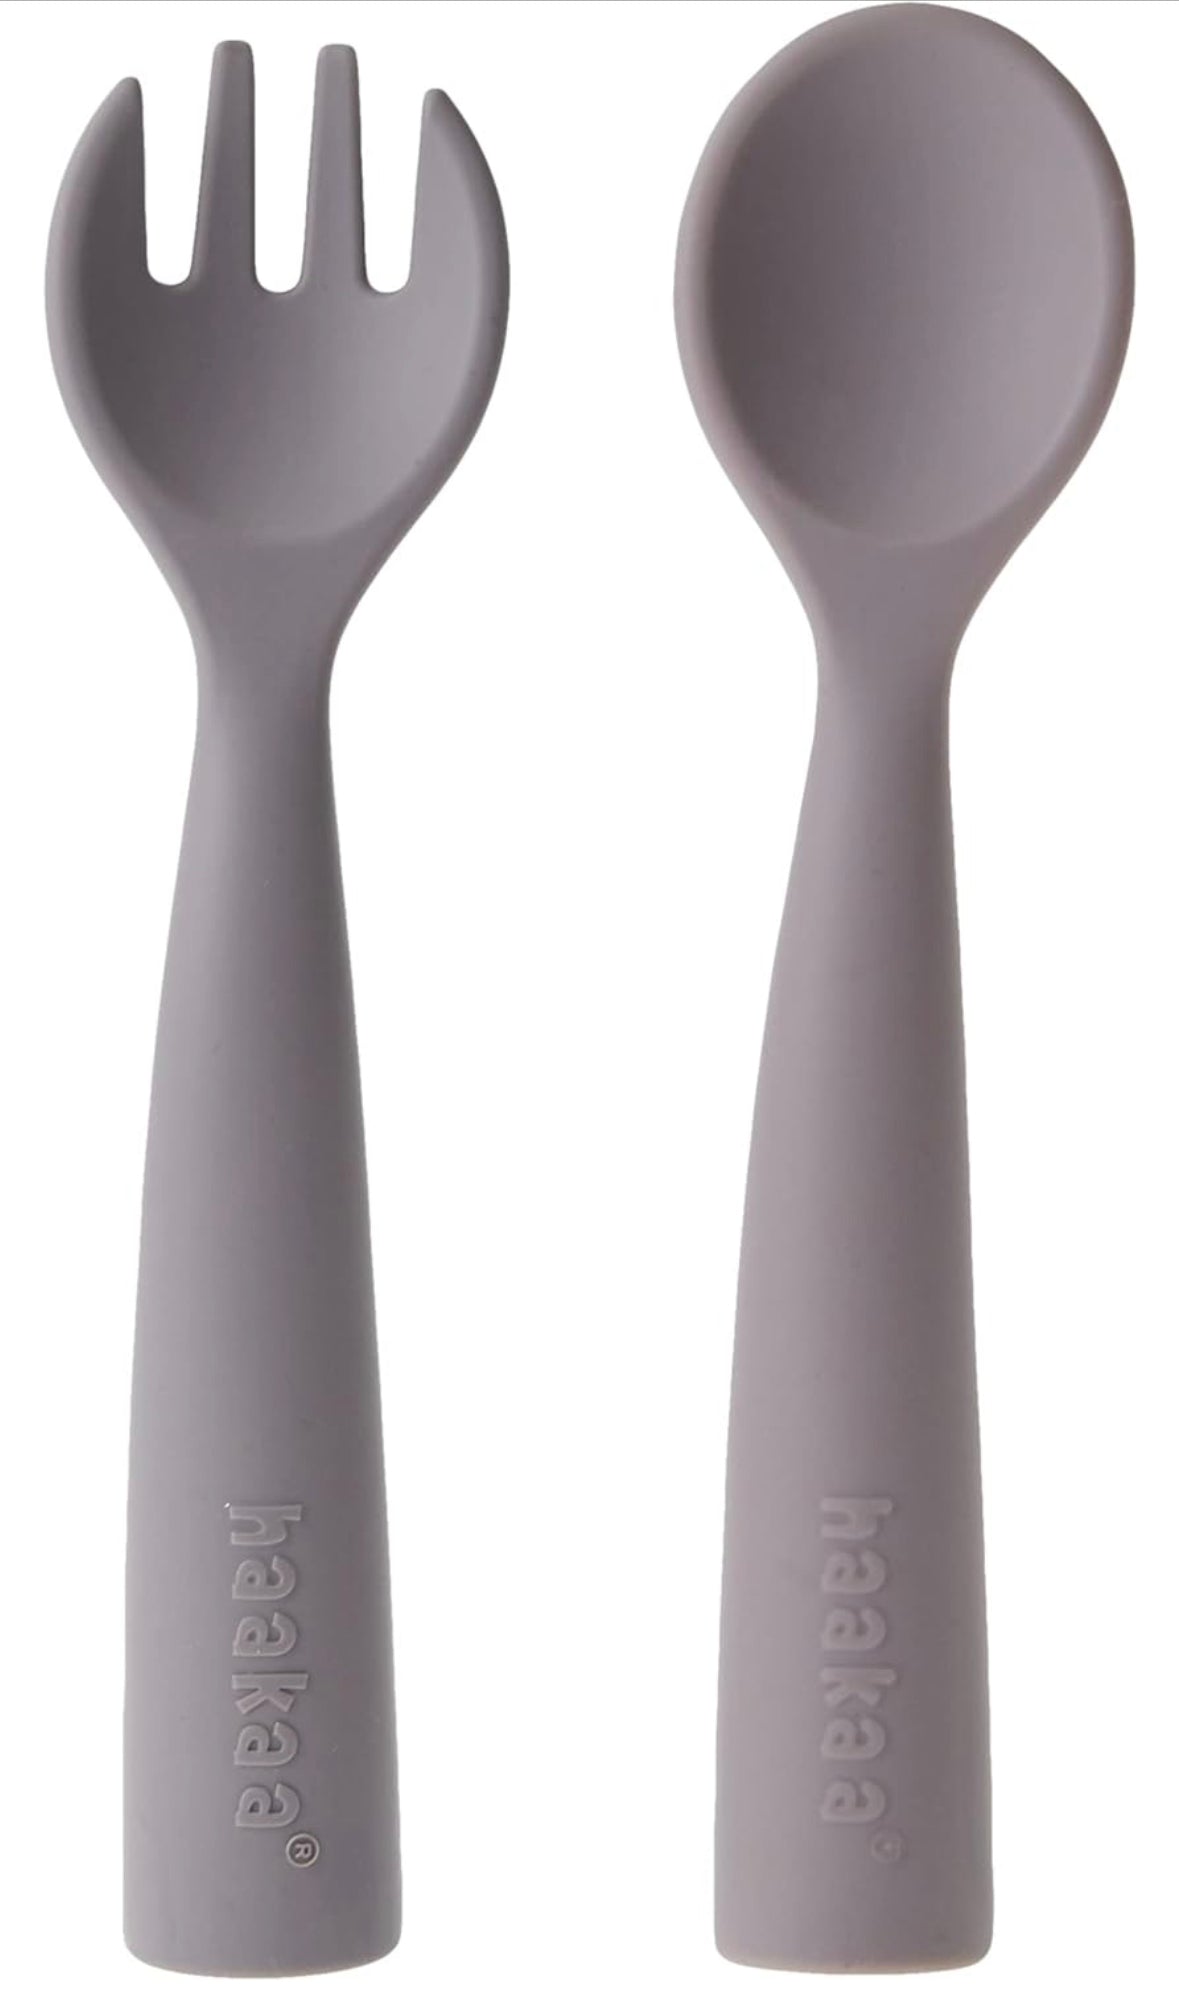 Haakaa Bendy Silicone Cutlery Set - SUVA Grey